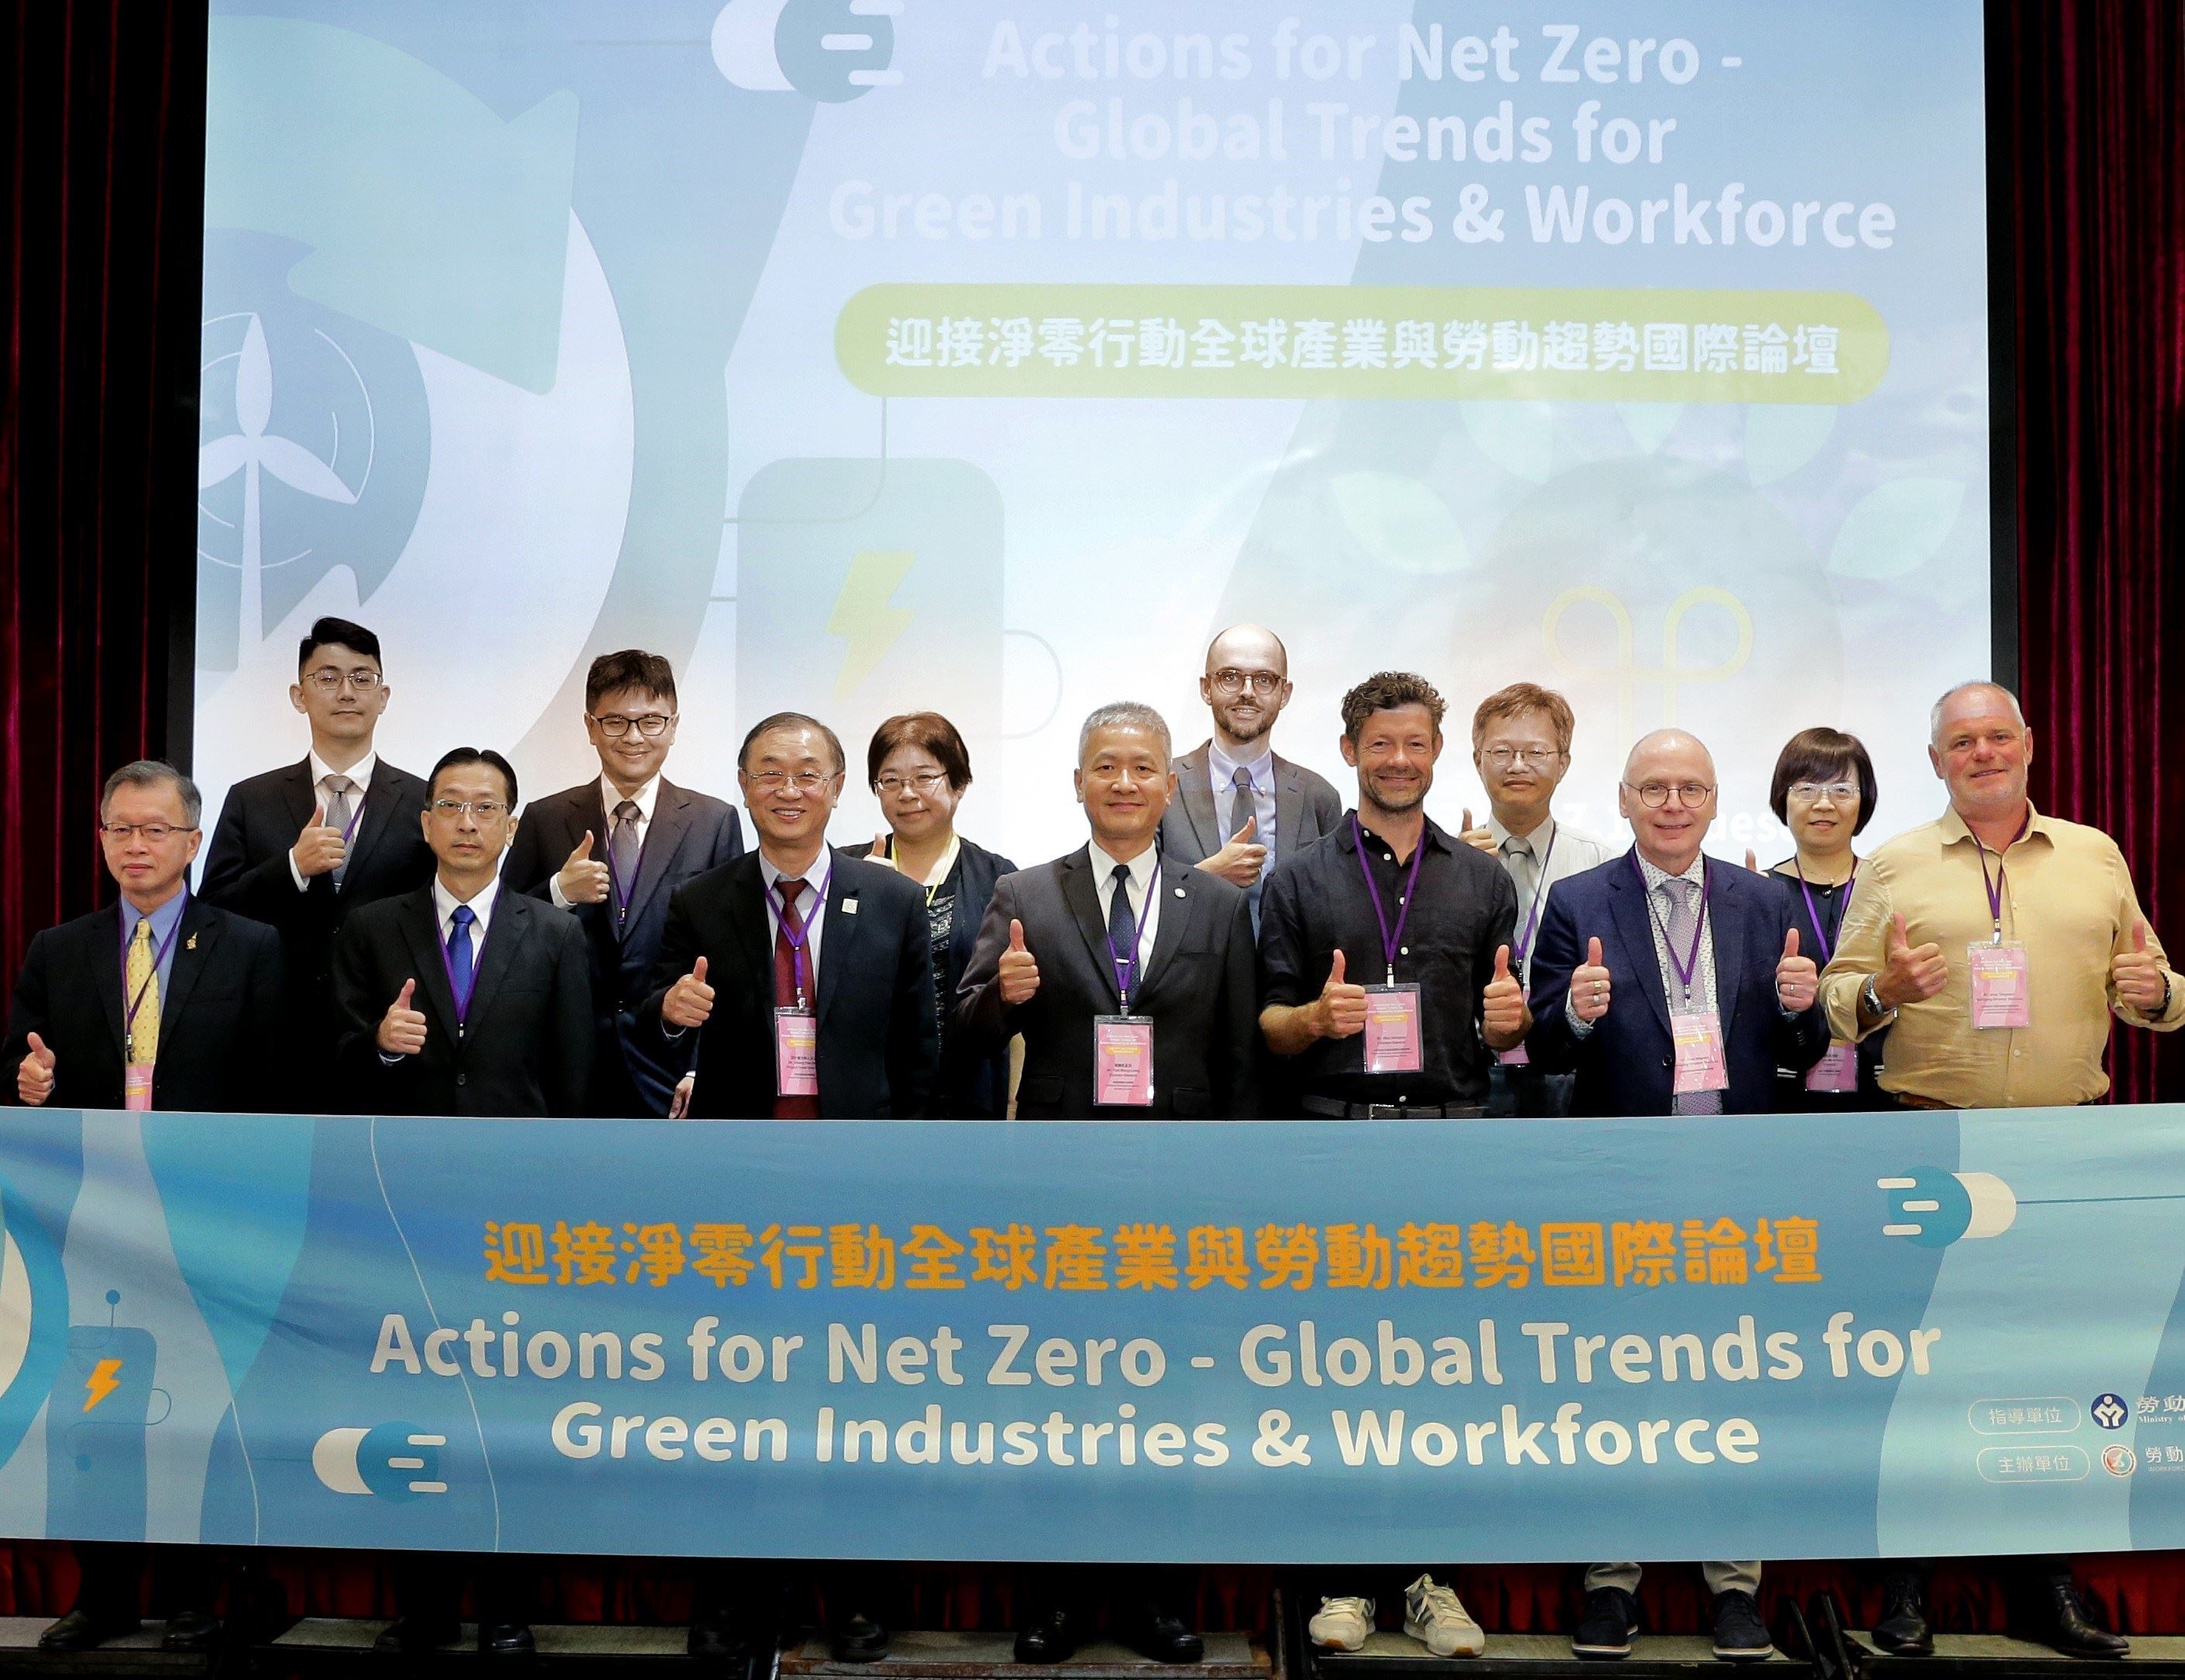 Group photo of Mr. Tsai Meng-Liang, Director-General of WDA, Mr. Wim Adriaens, Director General of VDAB